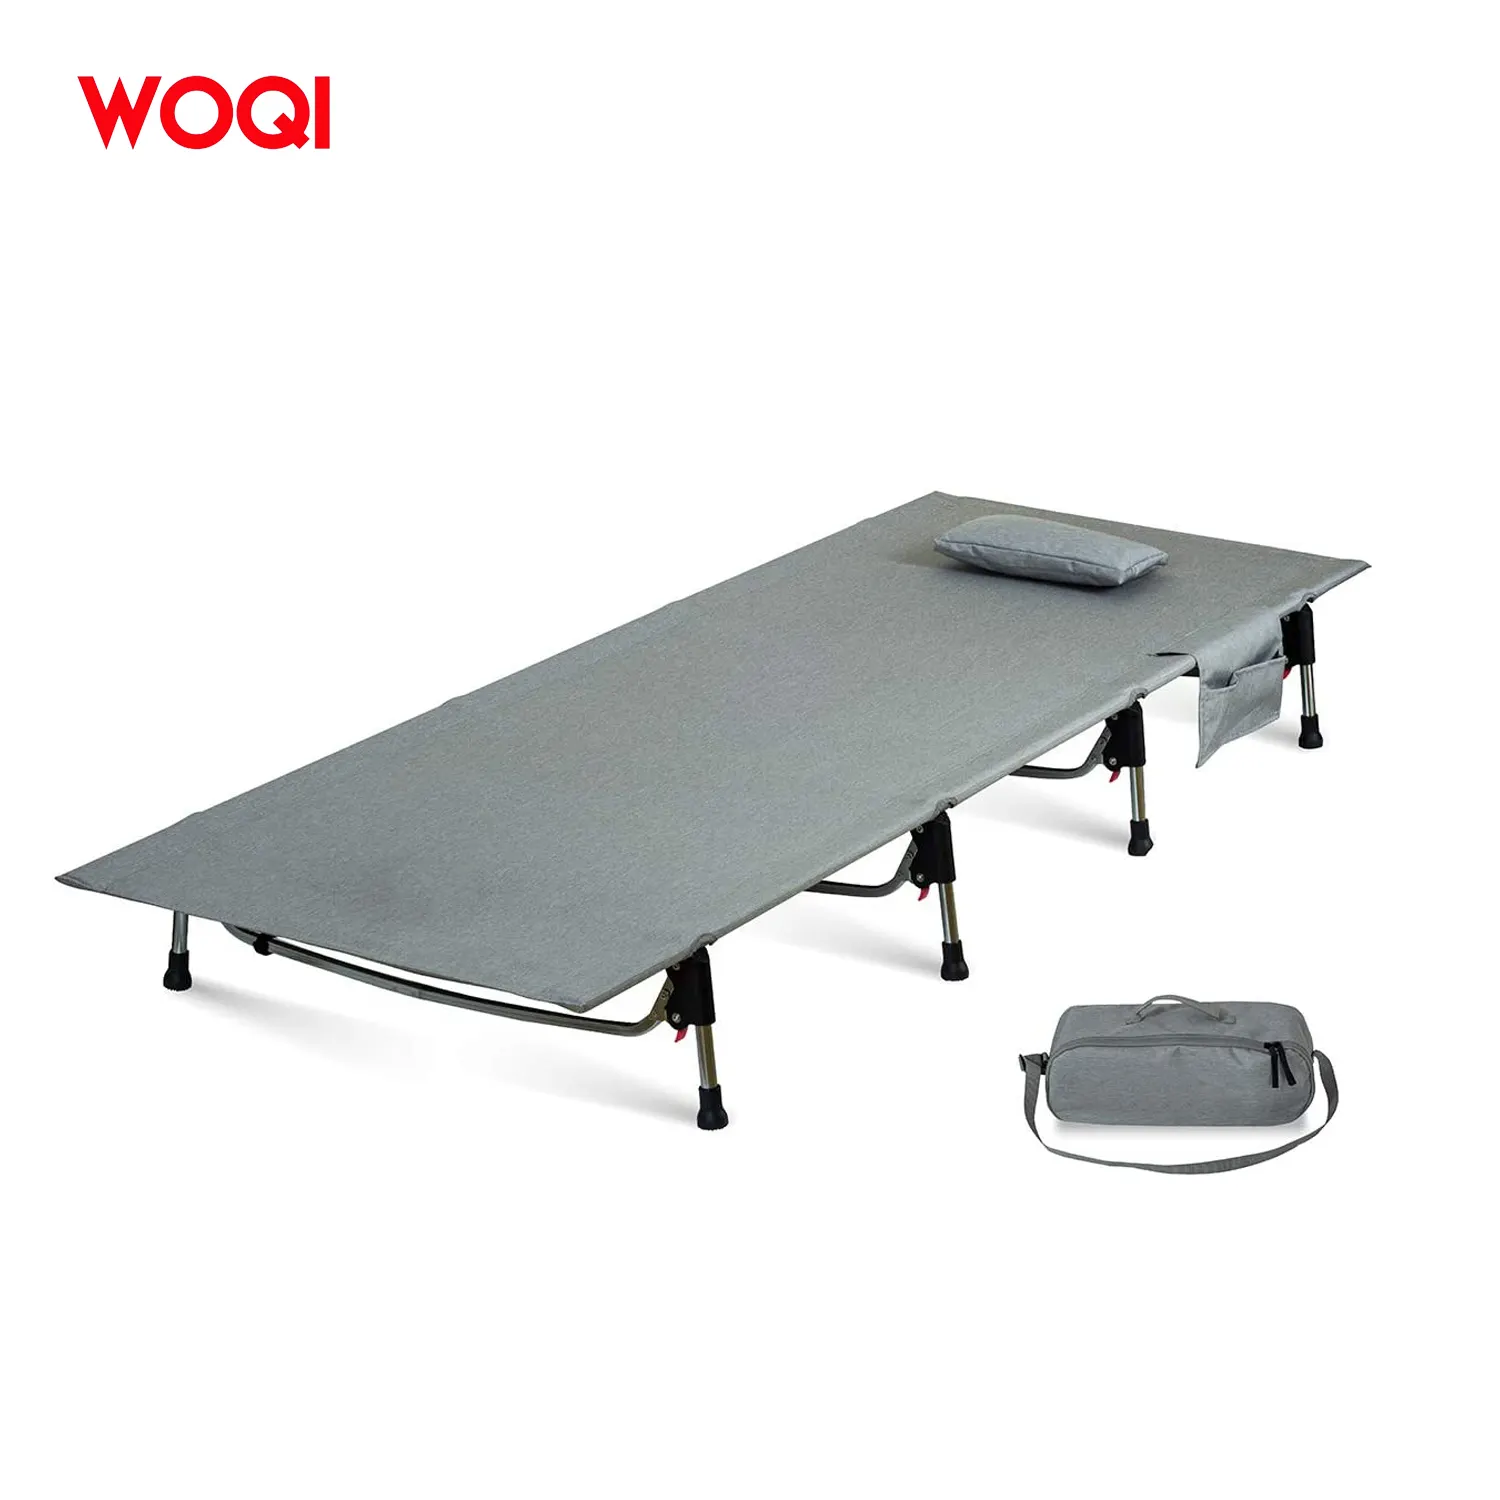 Berço dobrável de alumínio woqi, cama dobrável ajustável de alumínio para viagens e acampamento